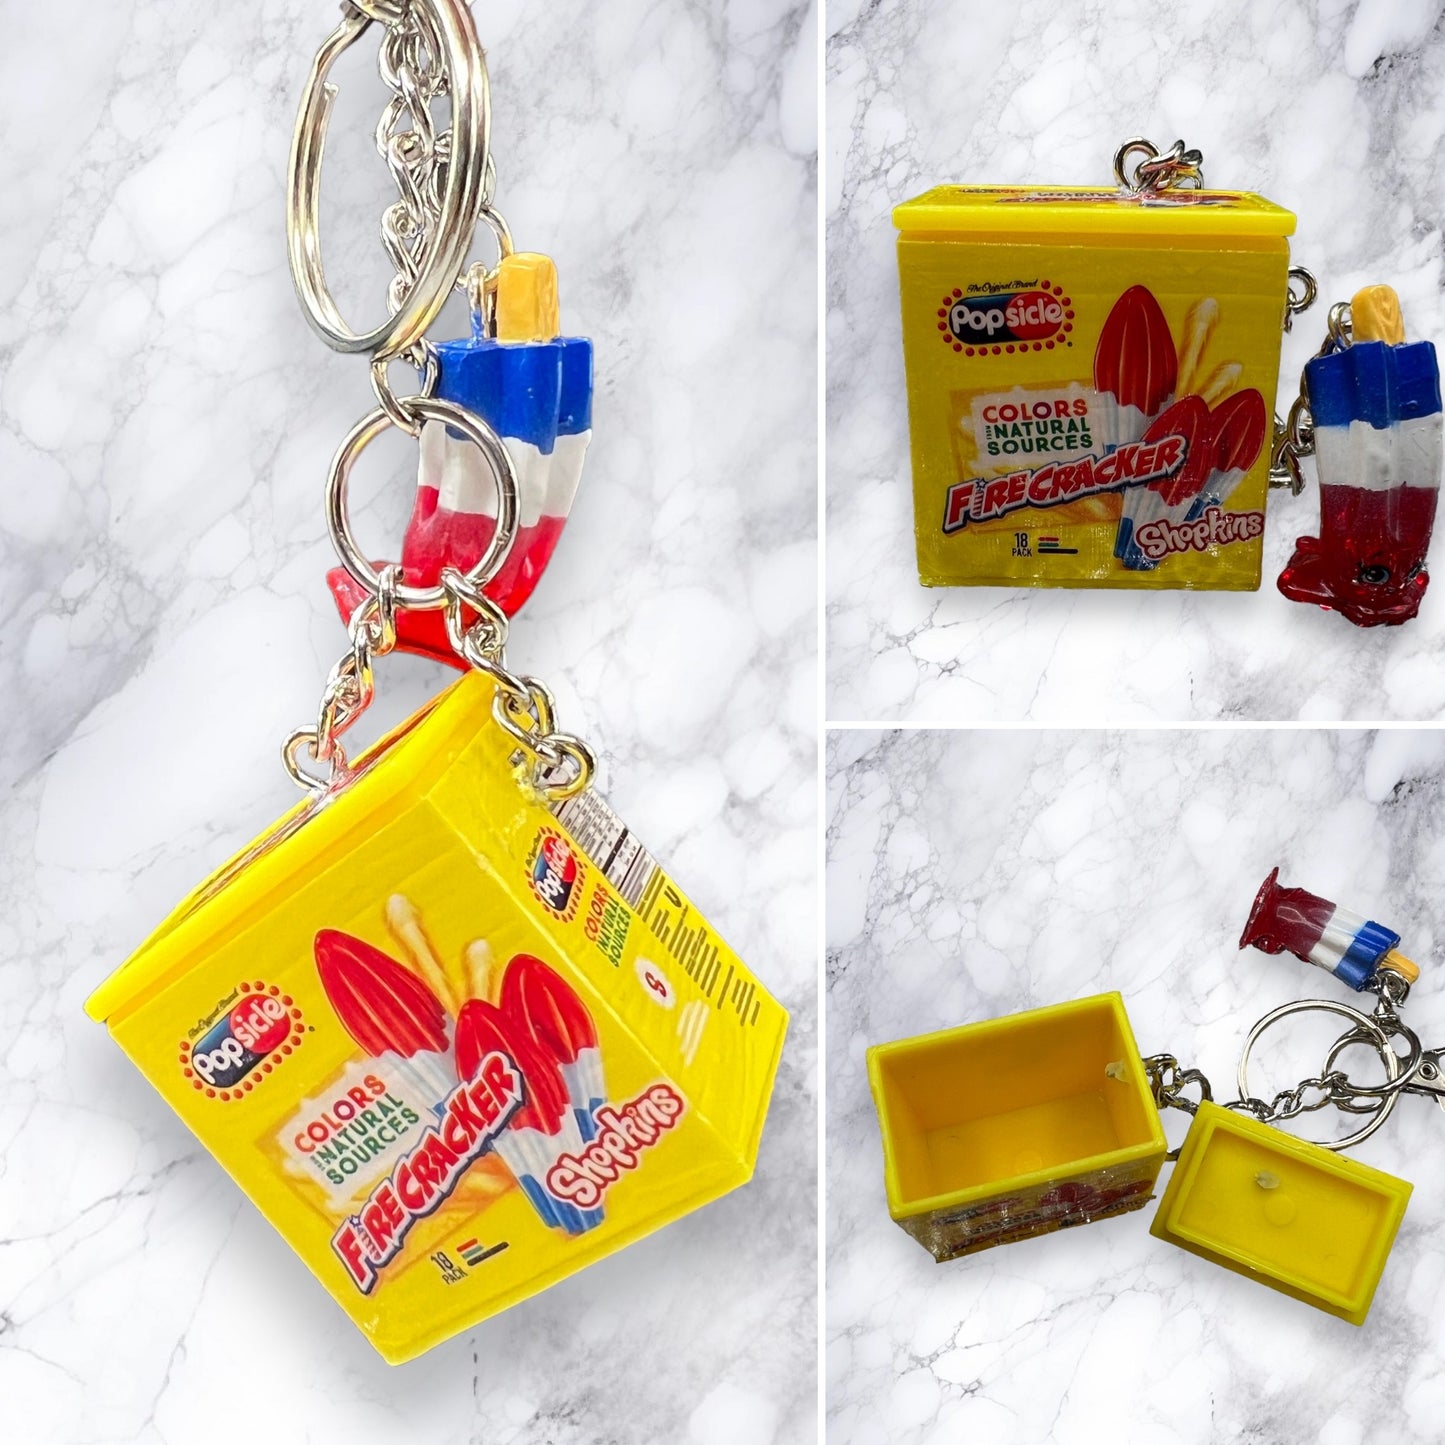 Mini Food Stash Keychains and Bag Charms